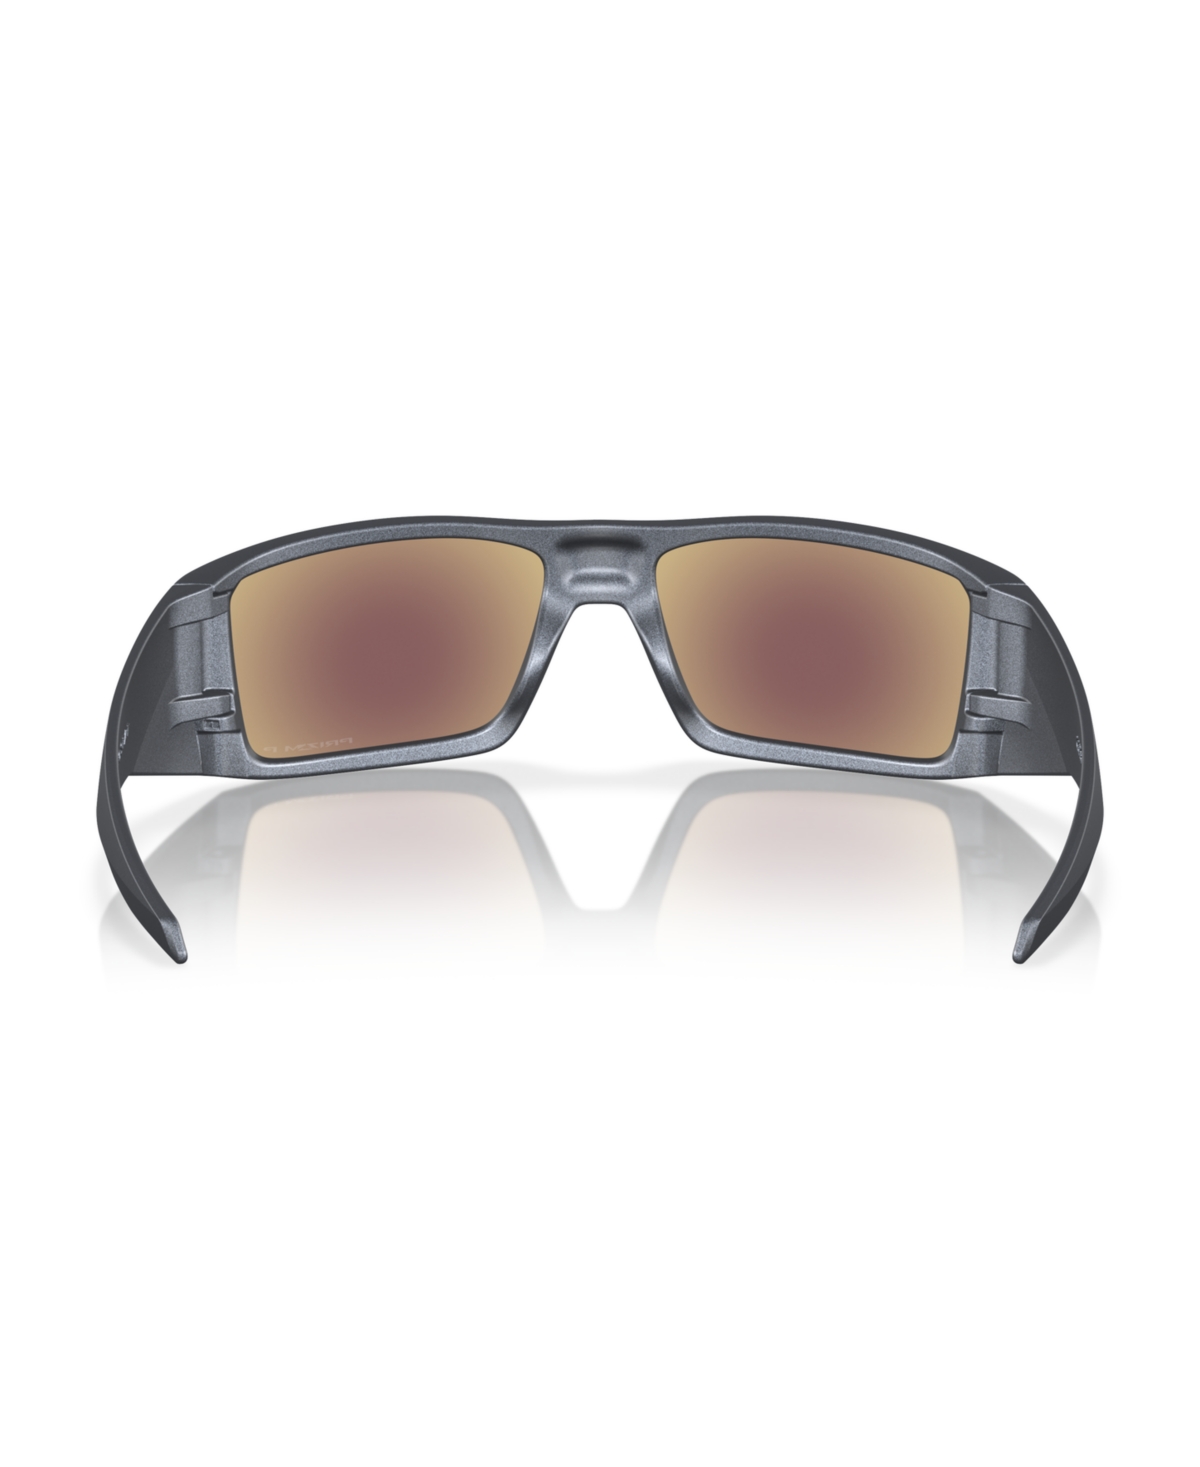 Shop Oakley Men's Polarized Sunglasses, Heliostat In Blue Steel